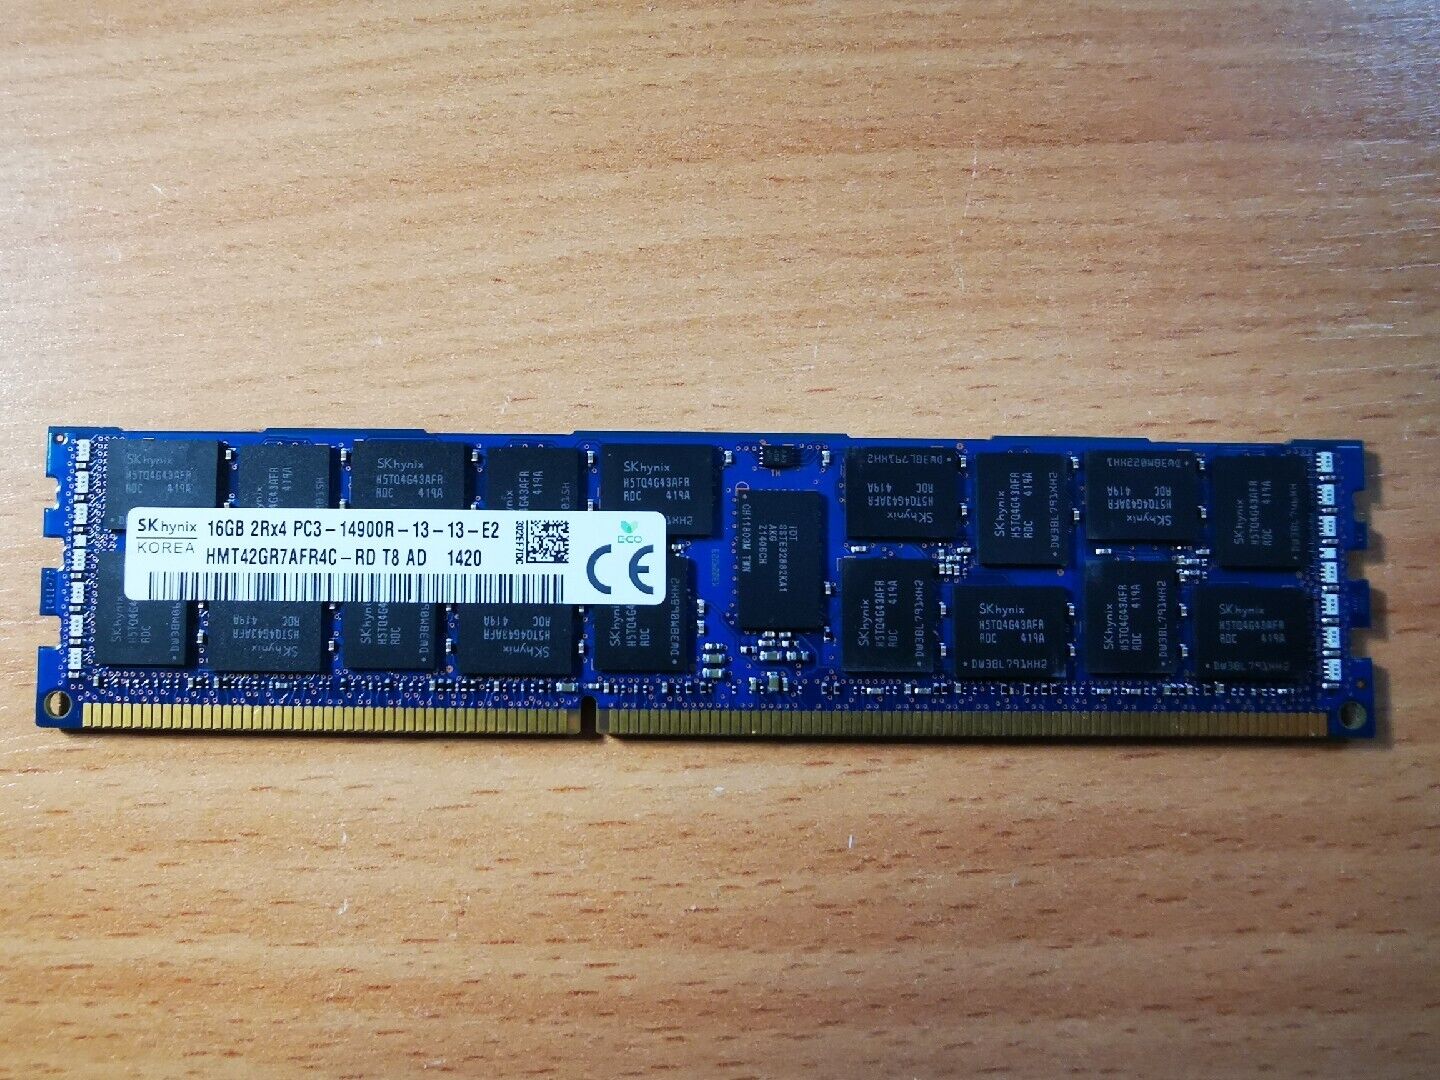 Hynix HMT42GR7AFR4C-RD 16GB DDR3-1866 RDIMM PC3-14900R ECC RAM Memory